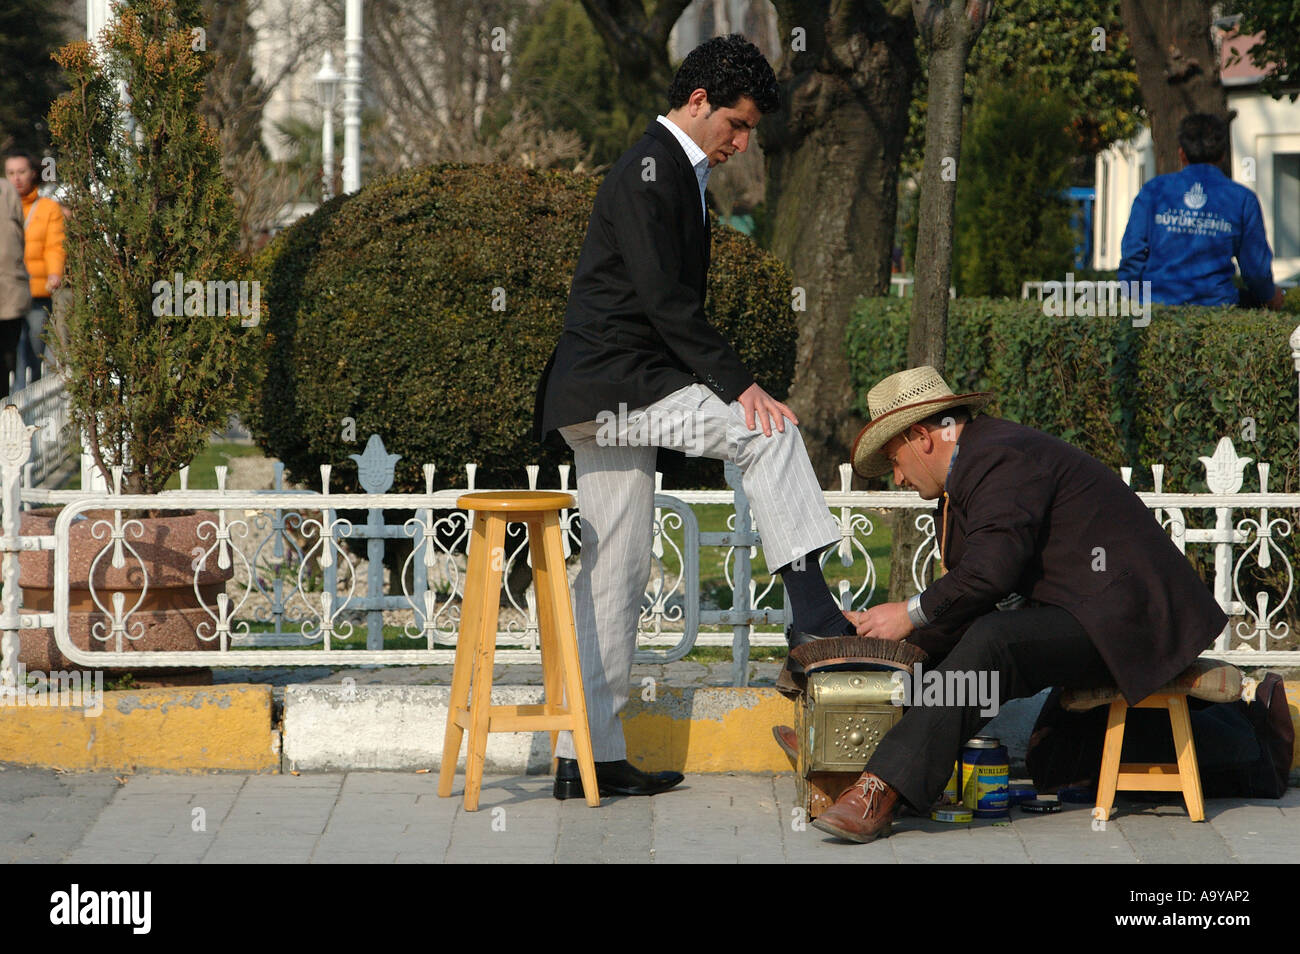 Un homme cirer les chaussures à Sultanahmet, Istanbul Turquie Banque D'Images